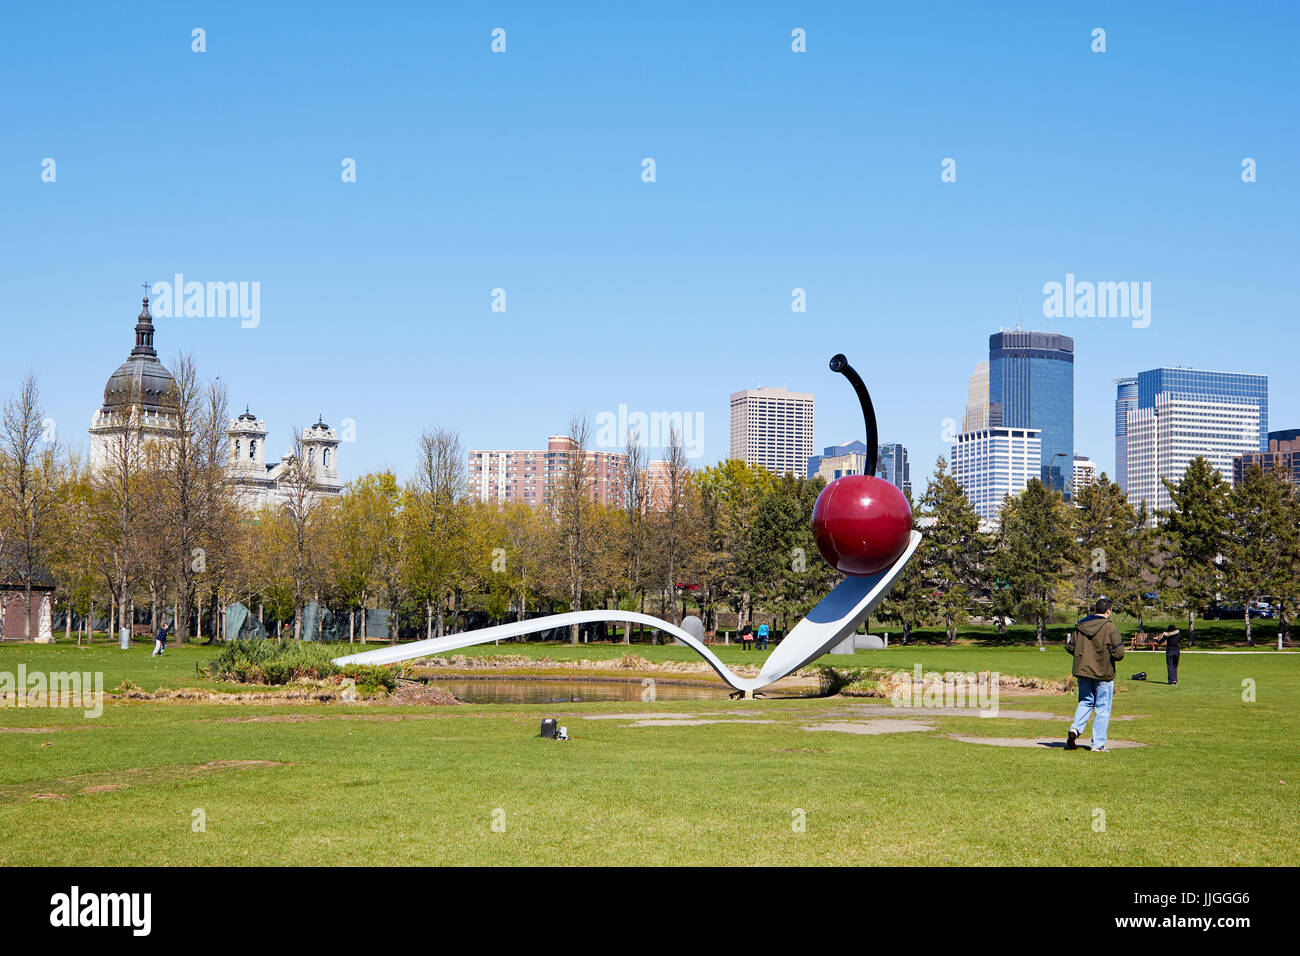 Minneapolis, USA - April 11, 2012: Minneapolis Sculpture giant spoon and cherry Stock Photo